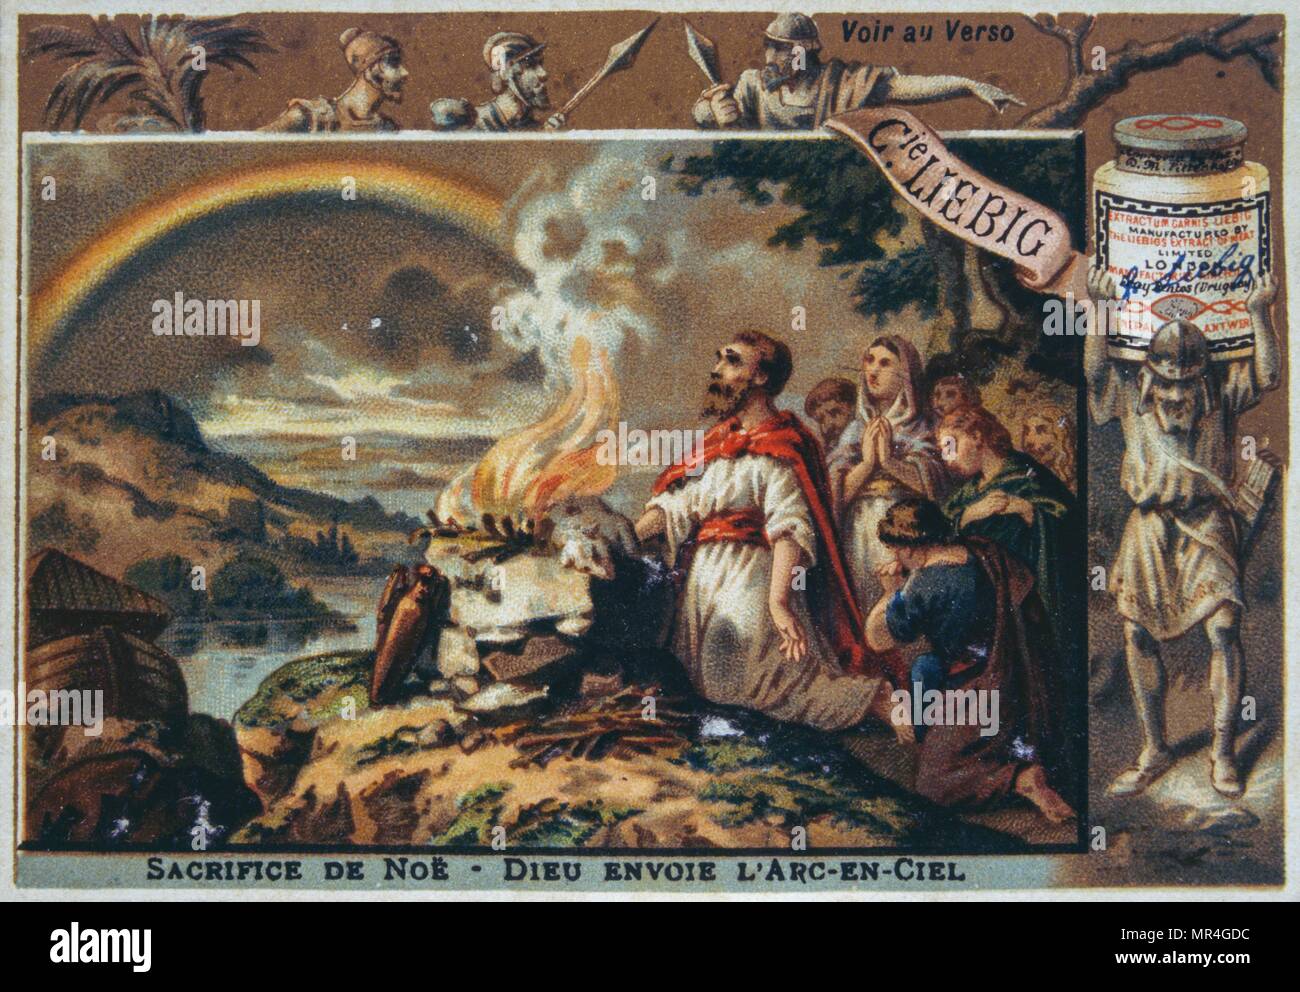 Tarjeta Leibig representando una escena de la Biblia: Noé hace un sacrificio Foto de stock